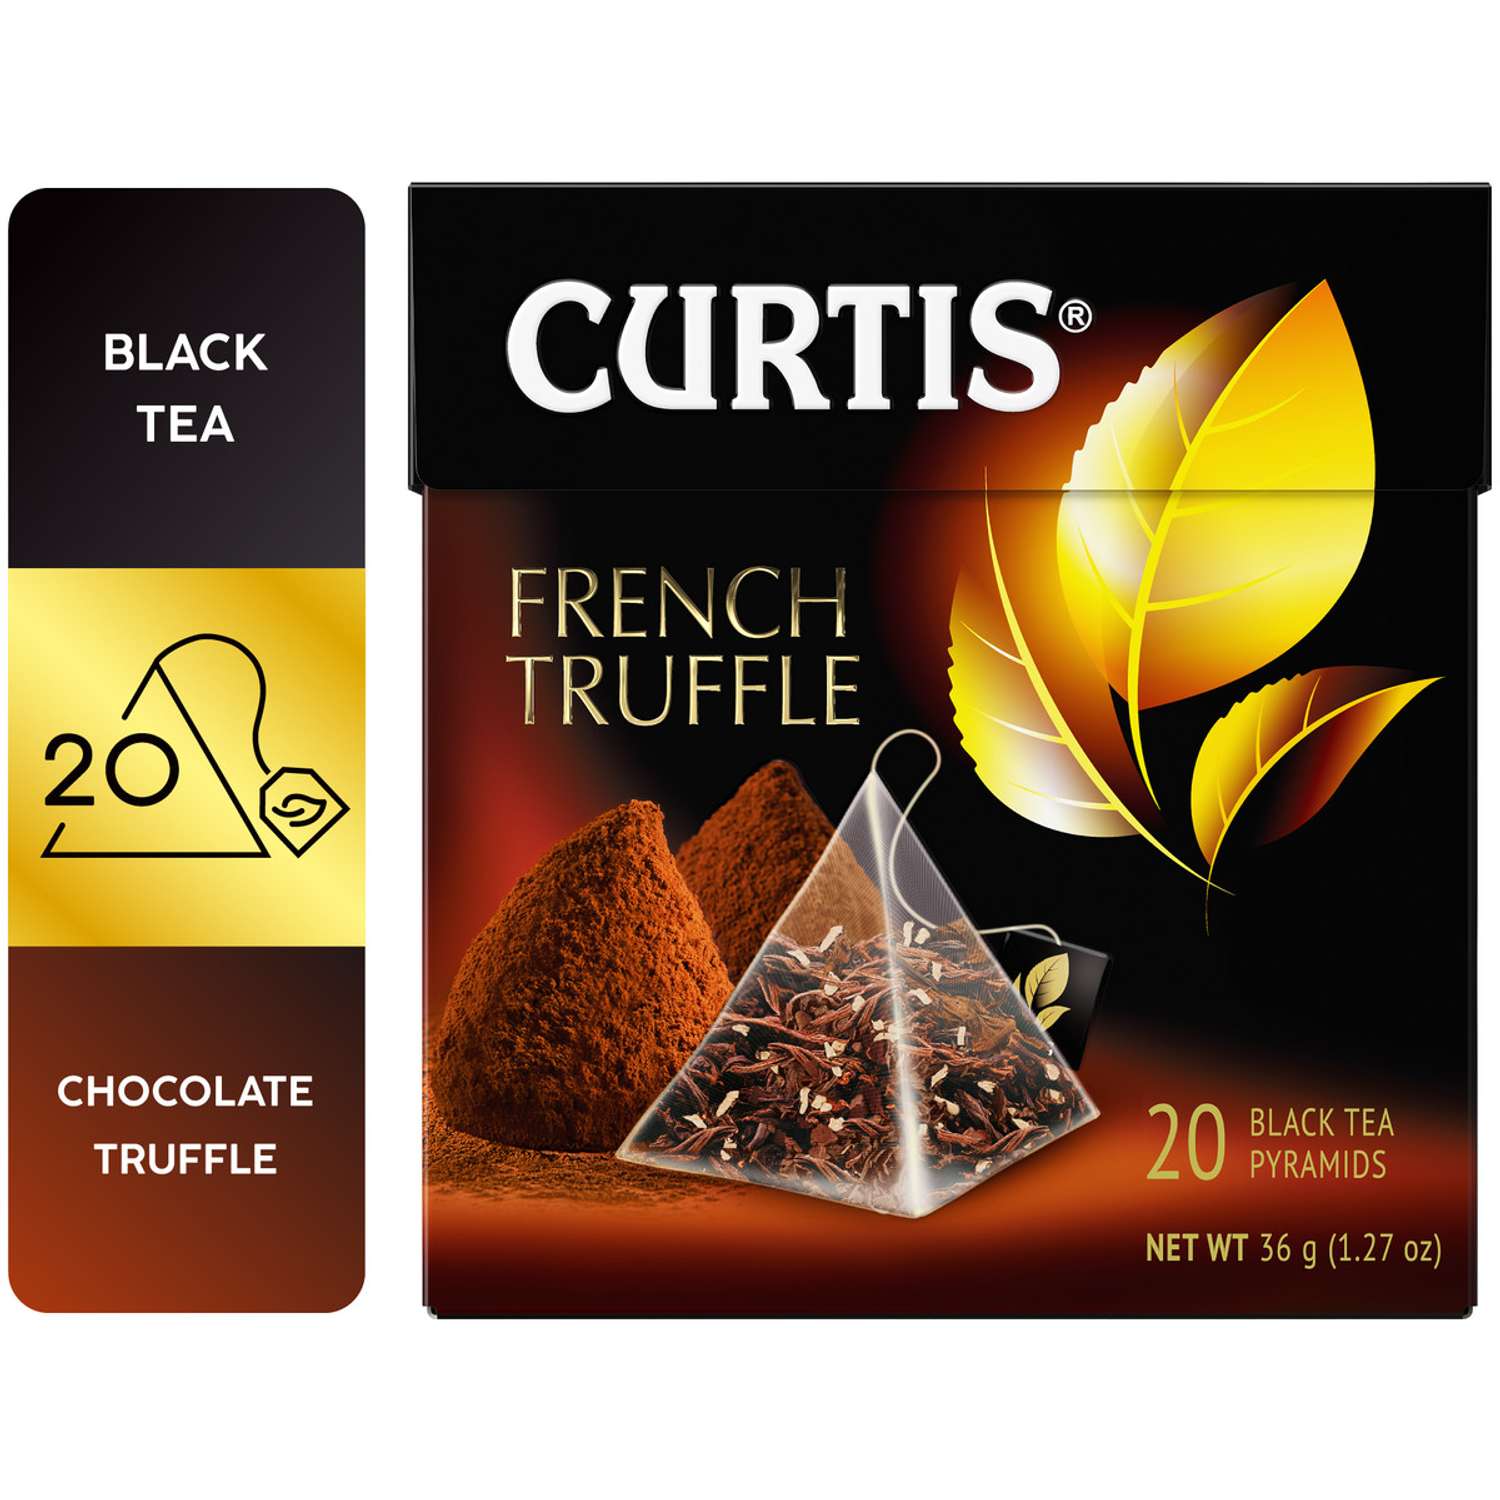 Чай черный Curtis French Truffle 20 пирамидок со вкусом нежного шоколадного трюфеля и кусочками кокоса - фото 2